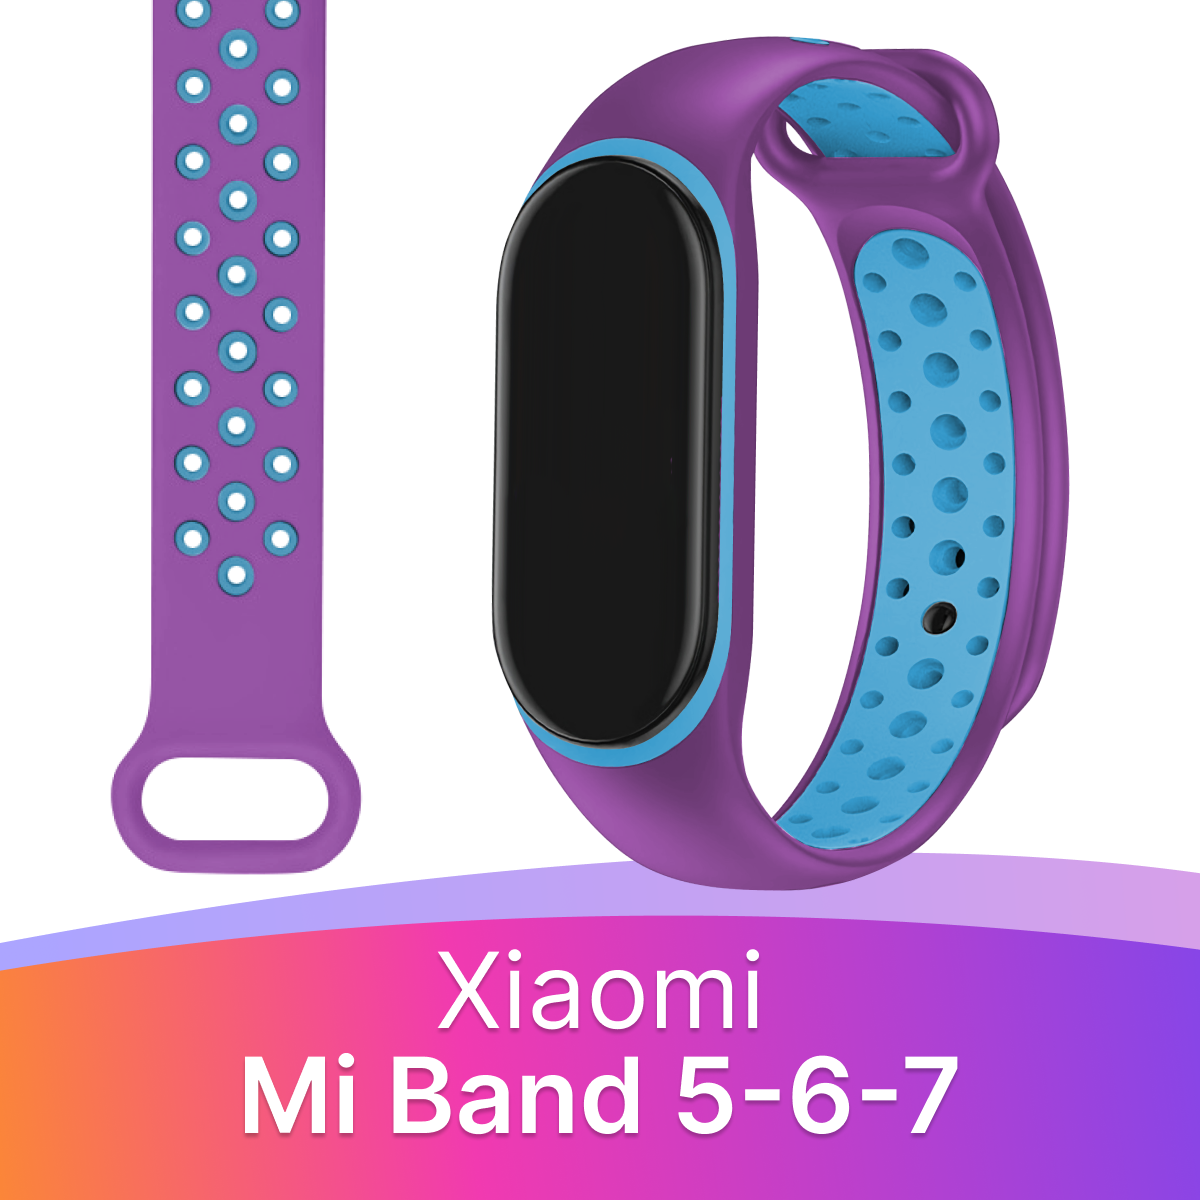 Силиконовый перфорированный ремешок для фитнес-трекера Xiaomi Mi Band 5, 6 и 7 / Спортивный браслет на смарт часы Сяоми Ми Бэнд 5, 6 и 7 / Фиолетово-голубой